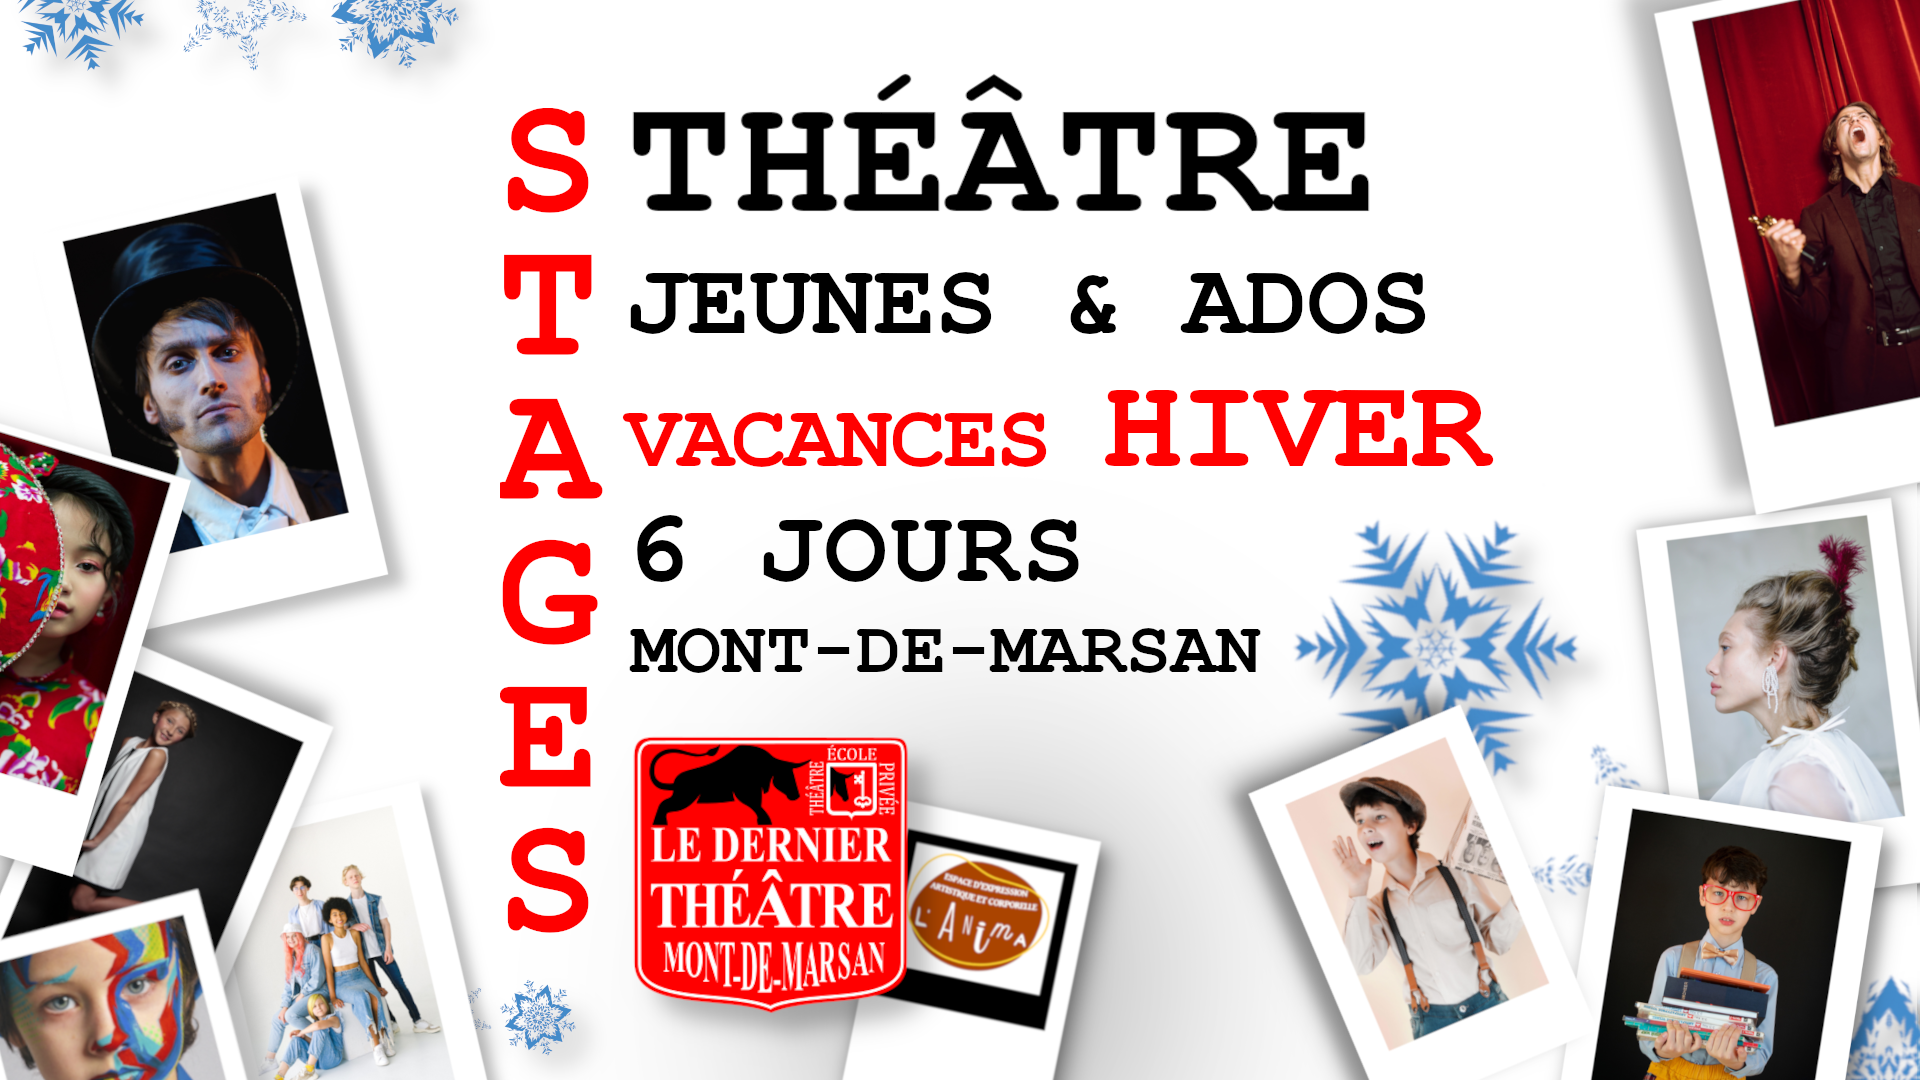 Le dernier théâtre - École privée art Dramatique - Stages Jeunes Ados Vacances hiver